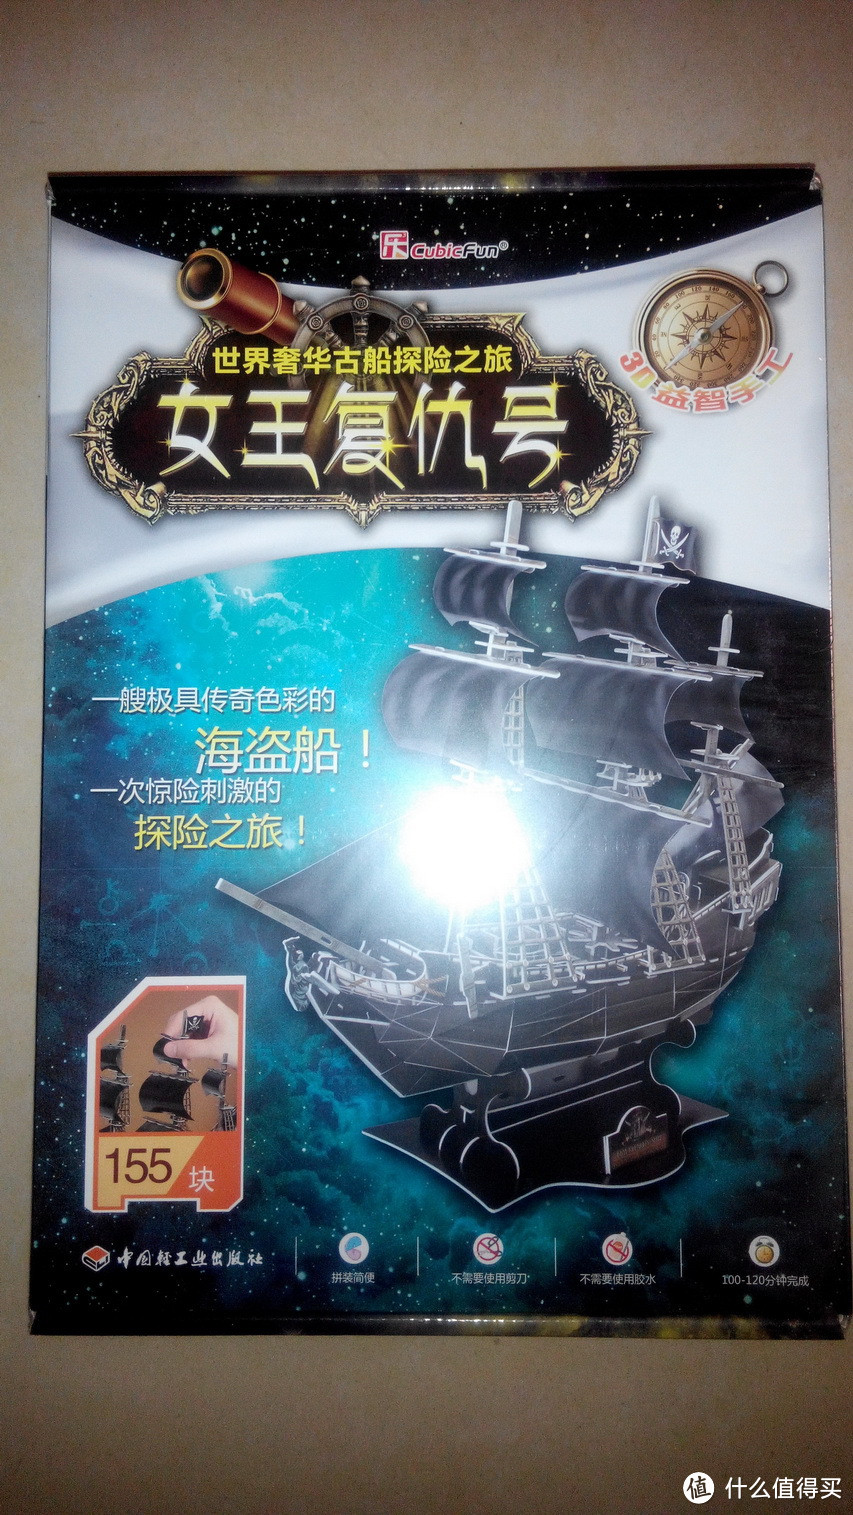 大航海时代：世界奢华古船探险之旅 3D立体拼插模型